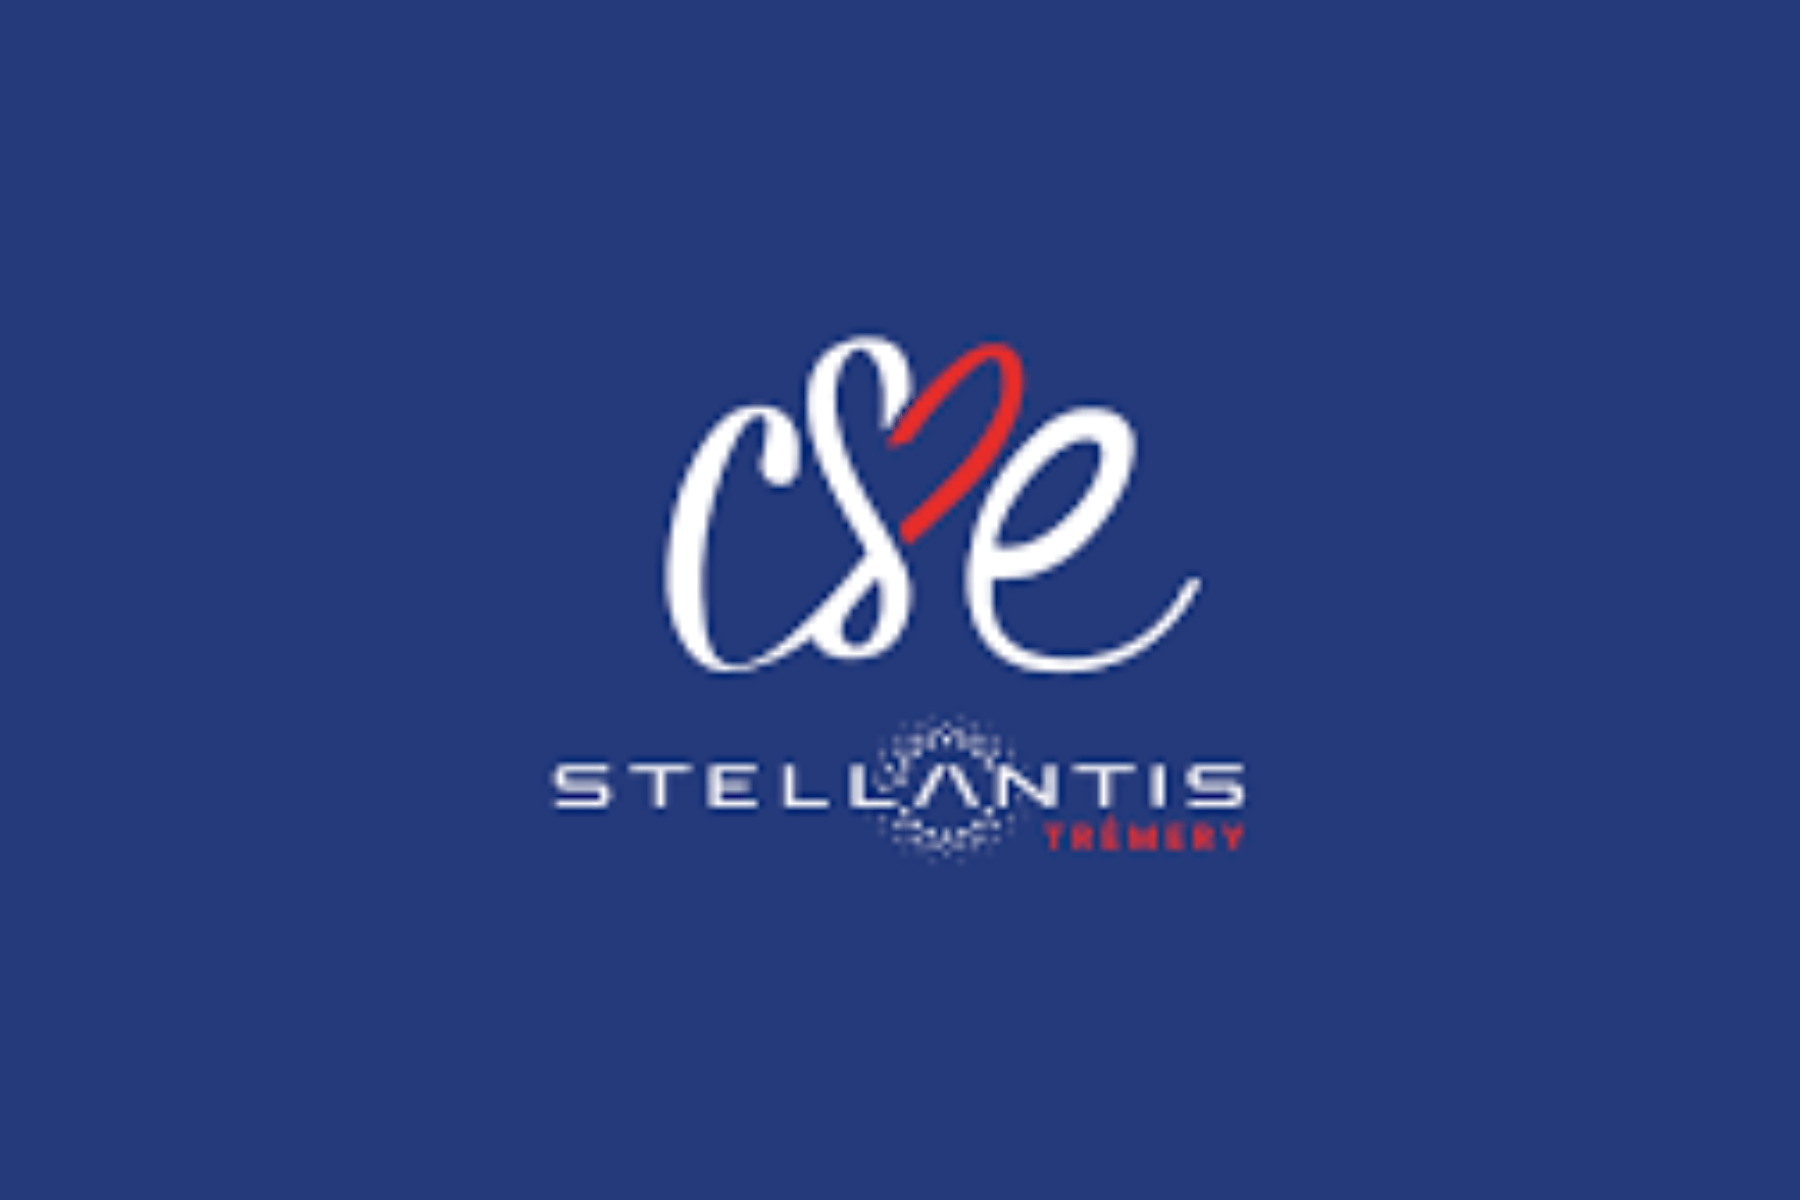 Portfolio CSE Stellantis